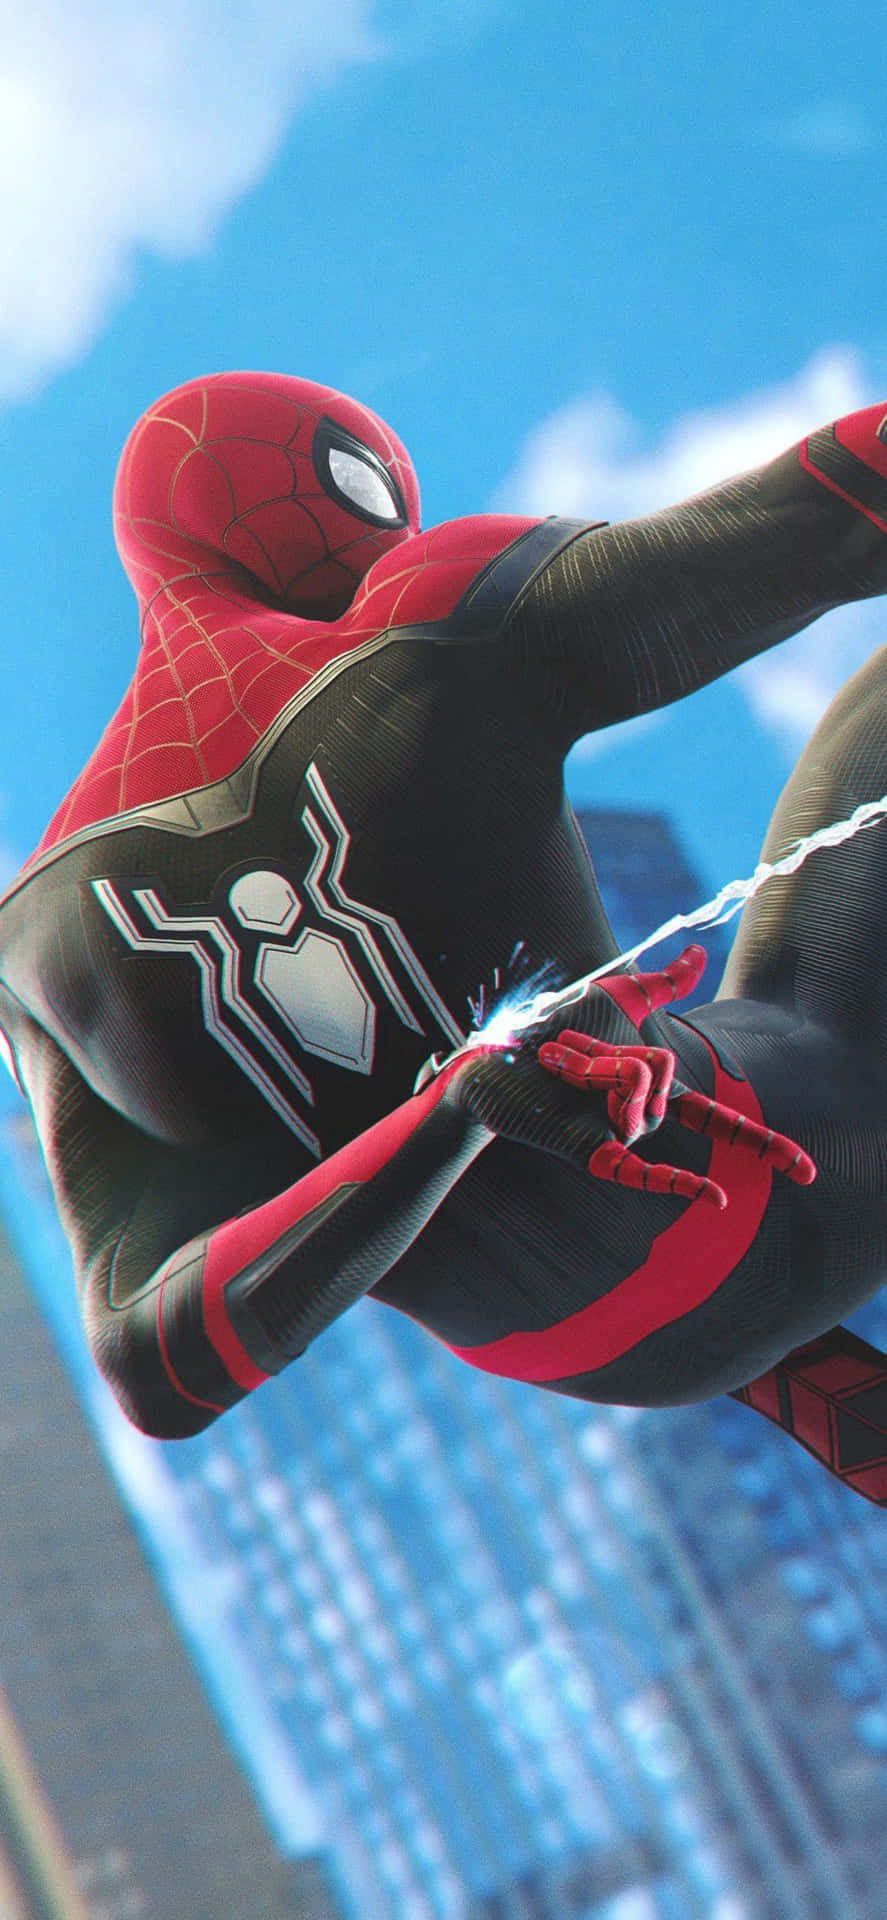 Spider Man der føler sig cool, rolig og samlet Wallpaper